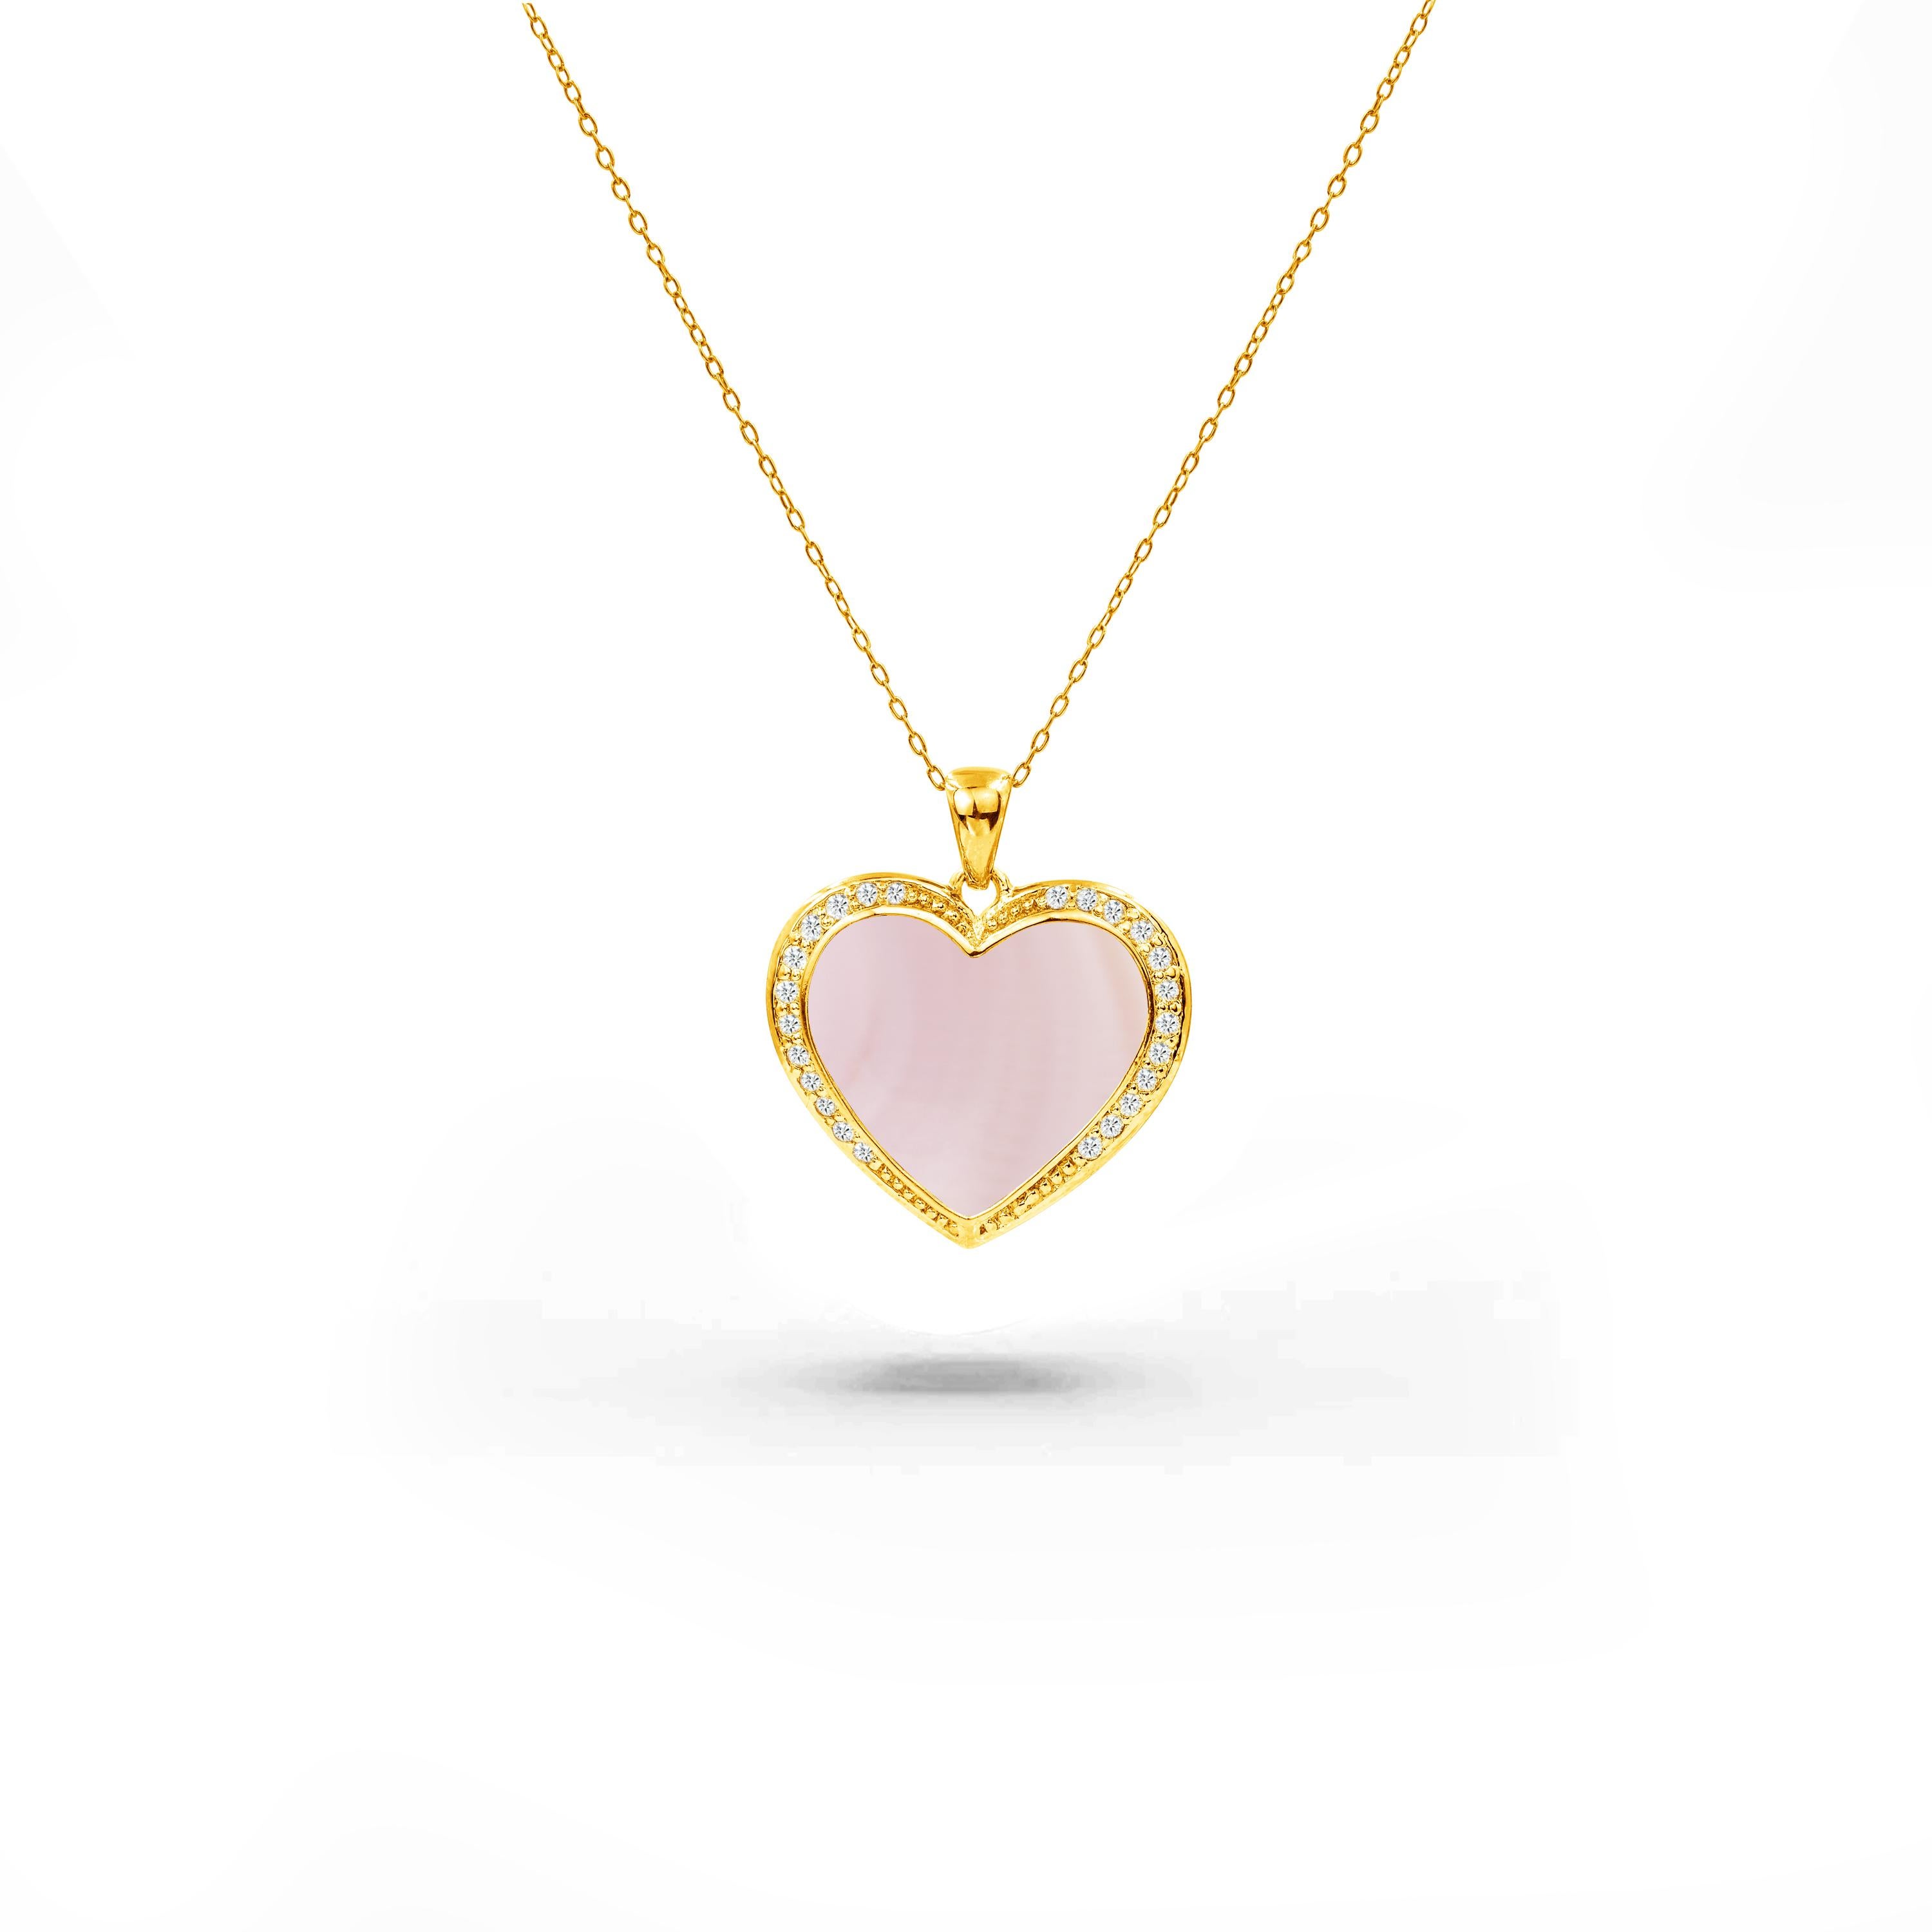 Ce collier exquis met en valeur la beauté naturelle de la pierre précieuse dans un pendentif en forme de cœur, créant un mélange harmonieux de sophistication et de sentiment qui vous laissera captivée. Ce collier peut être personnalisé avec des